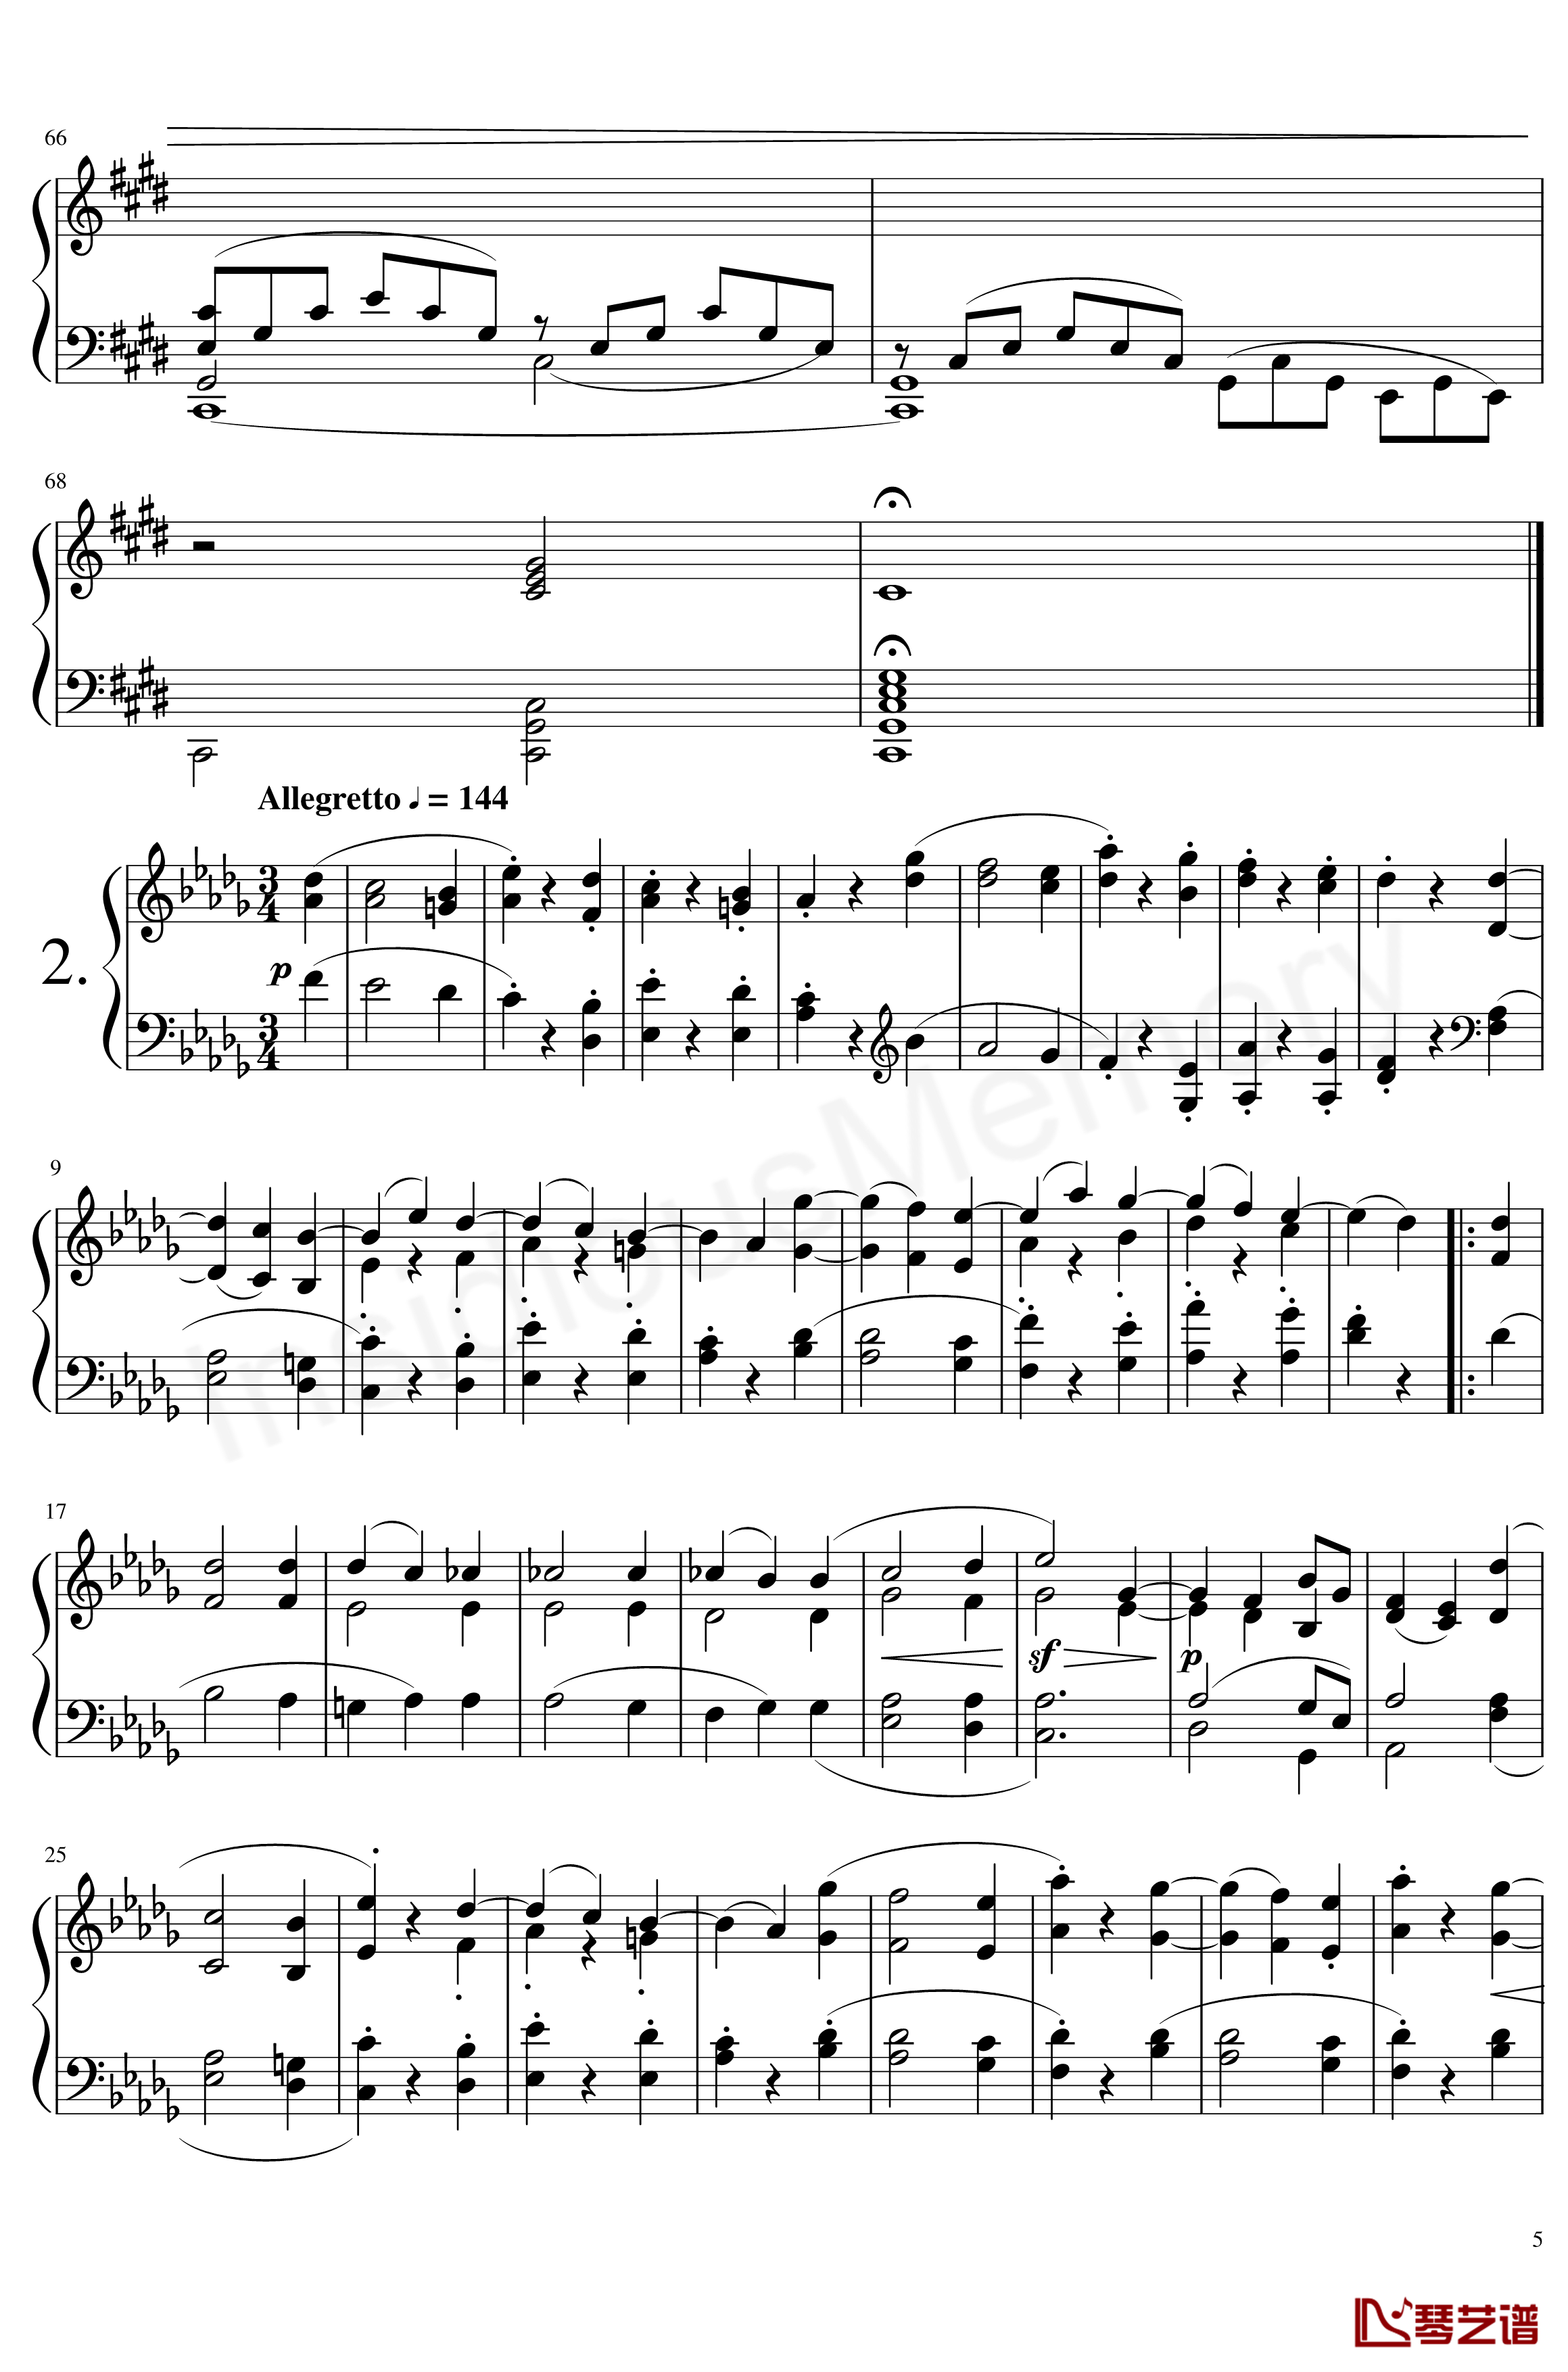 月光奏鸣曲钢琴谱-贝多芬-beethoven5